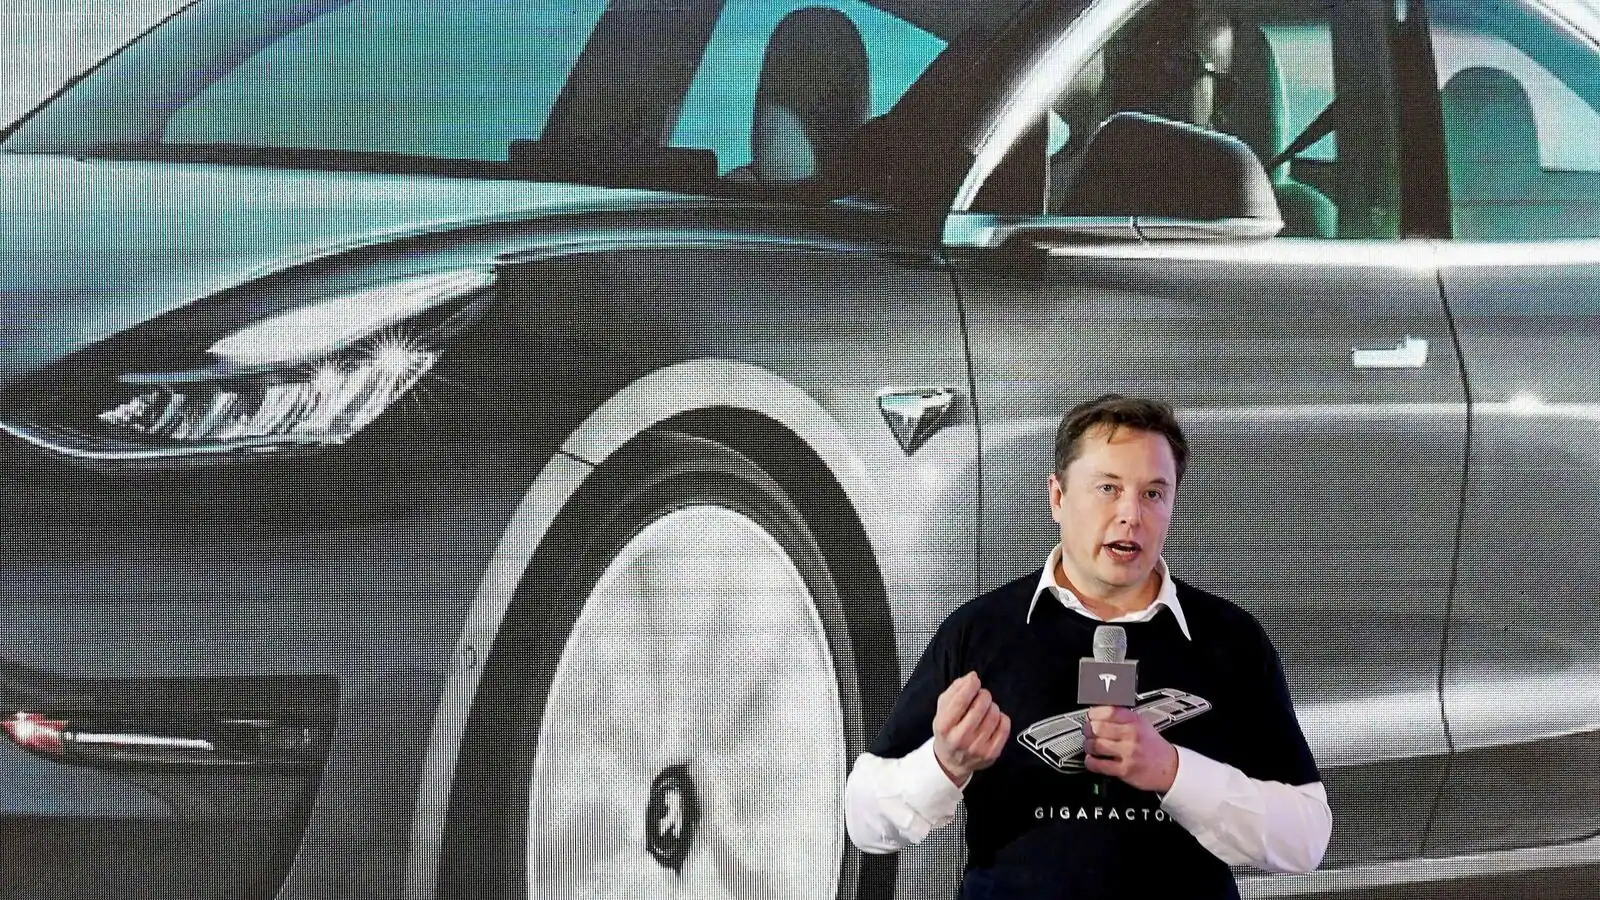 Elon Musk’s Huge Tesla $56 Billion Pay Deal Canceled, What’s Next for Tesla?